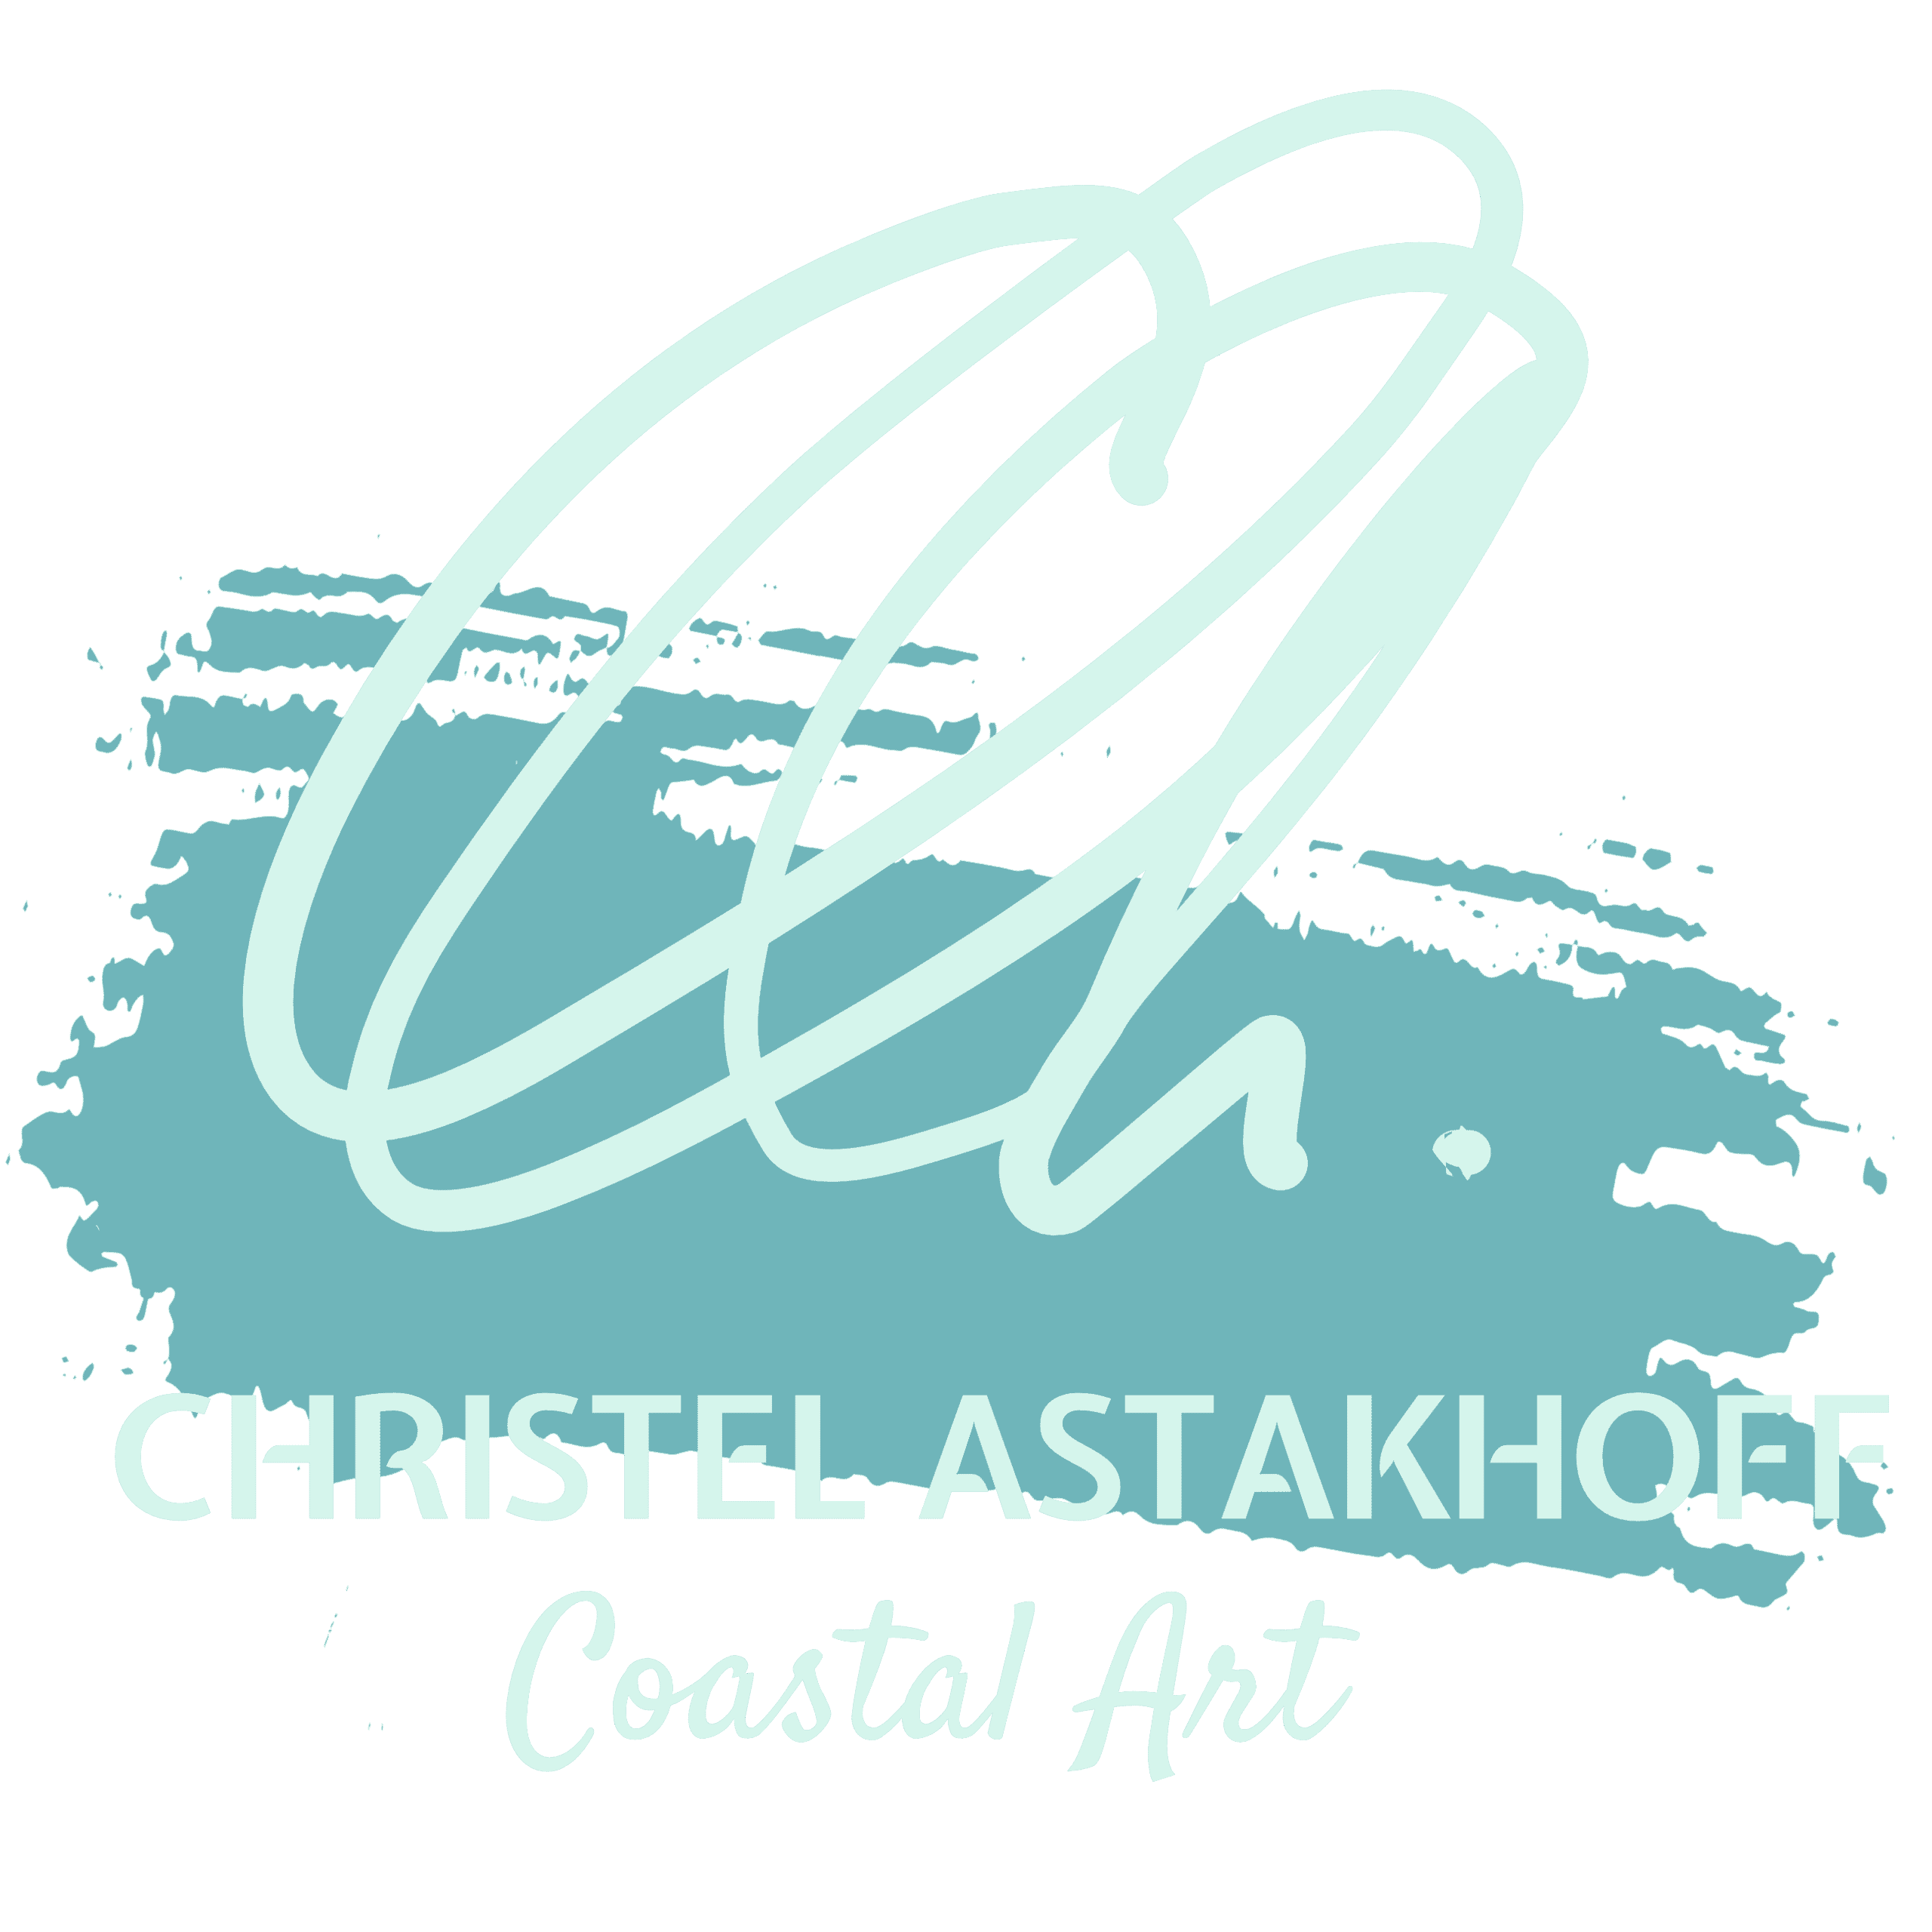 Christel Astakhoff Art logo light